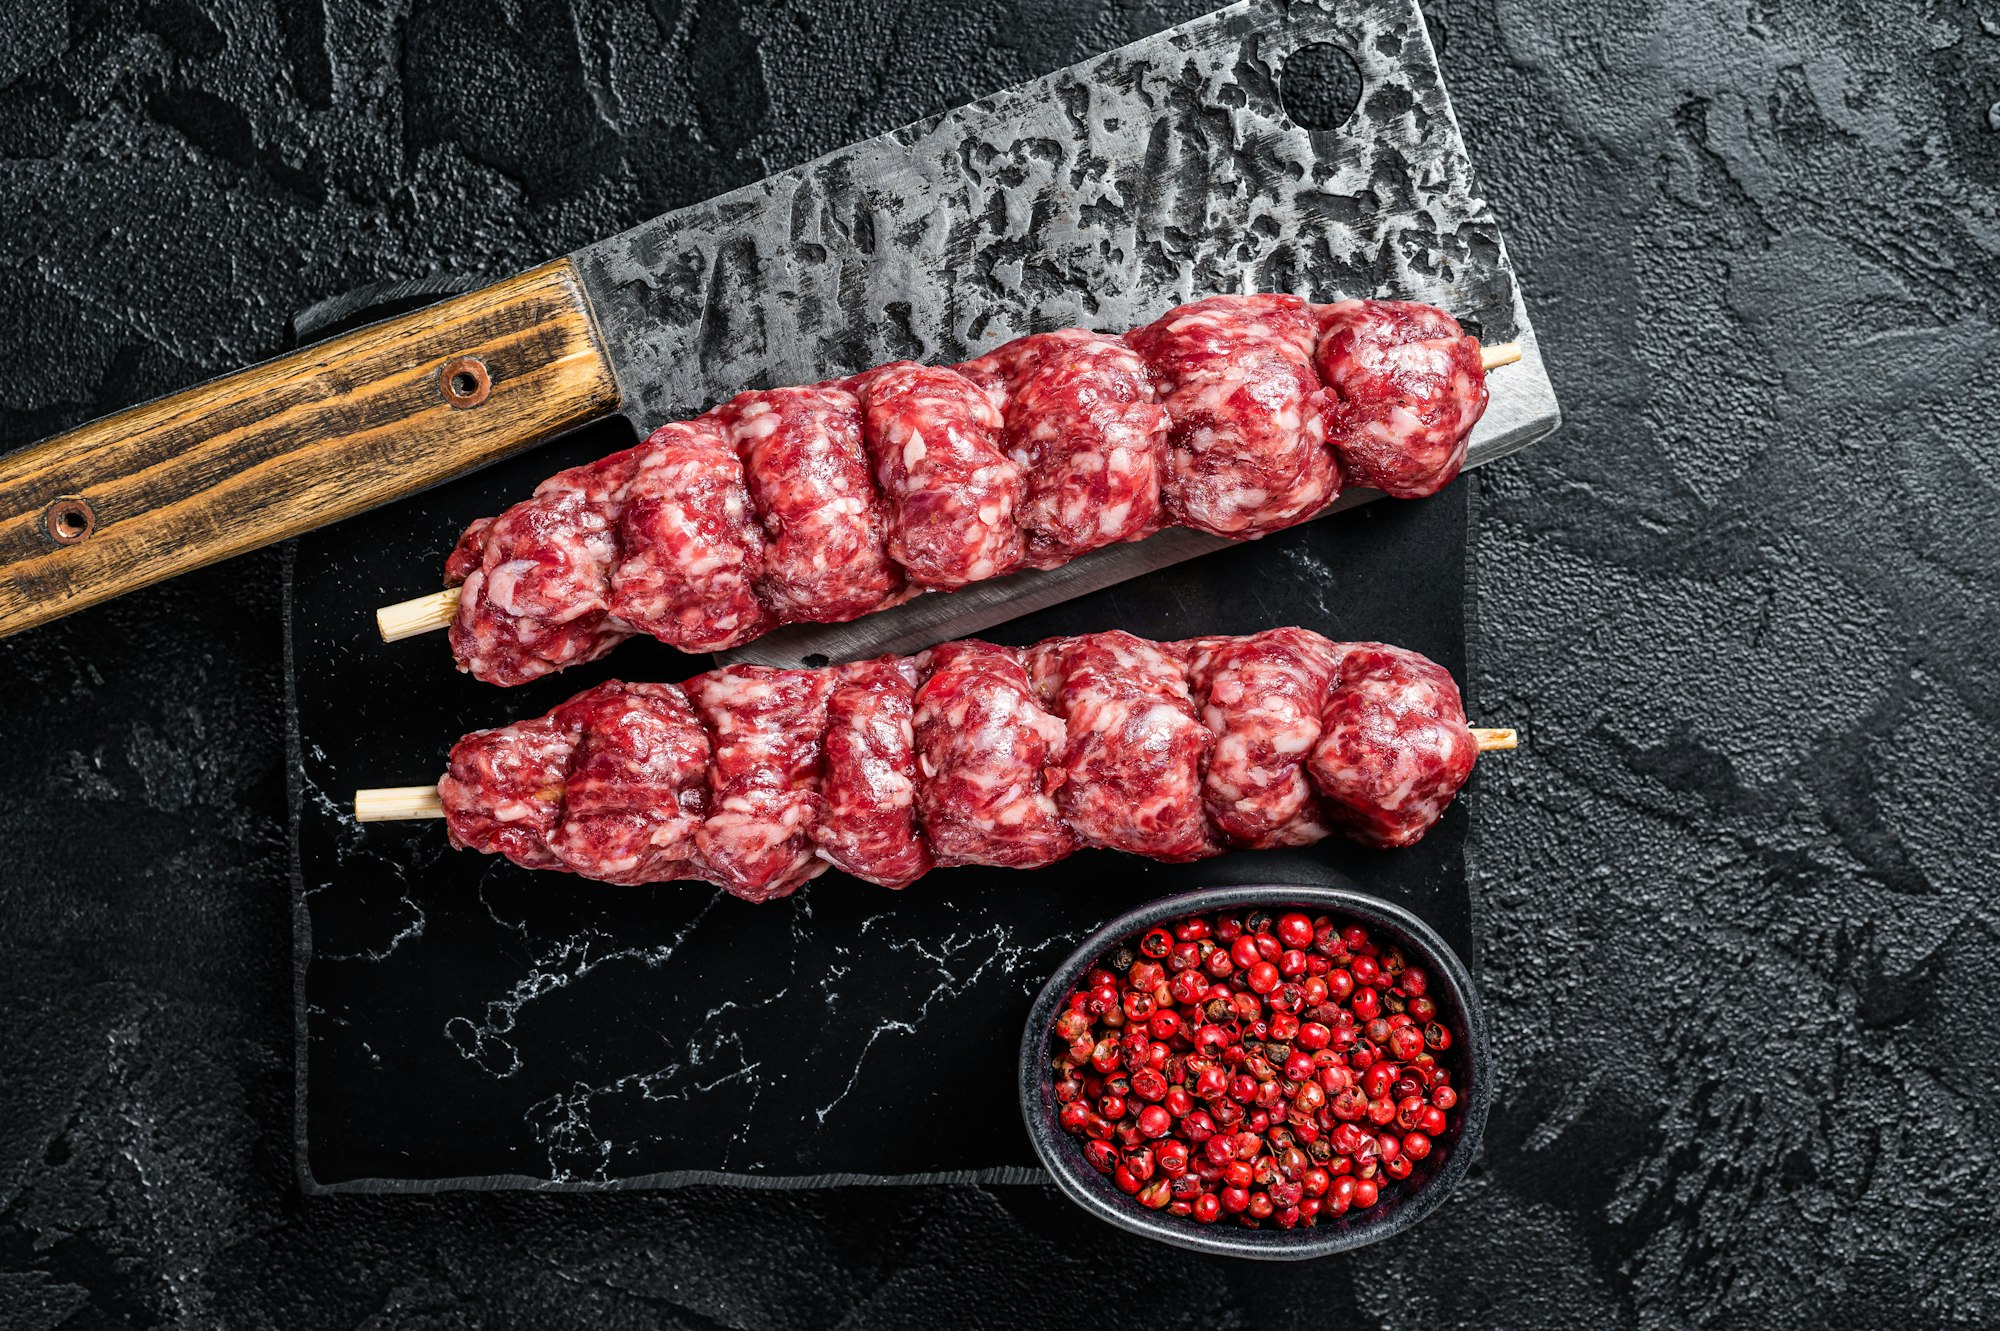 Raw beef Kofta kebab Skewers on a meat cleaver. Black background. Top view